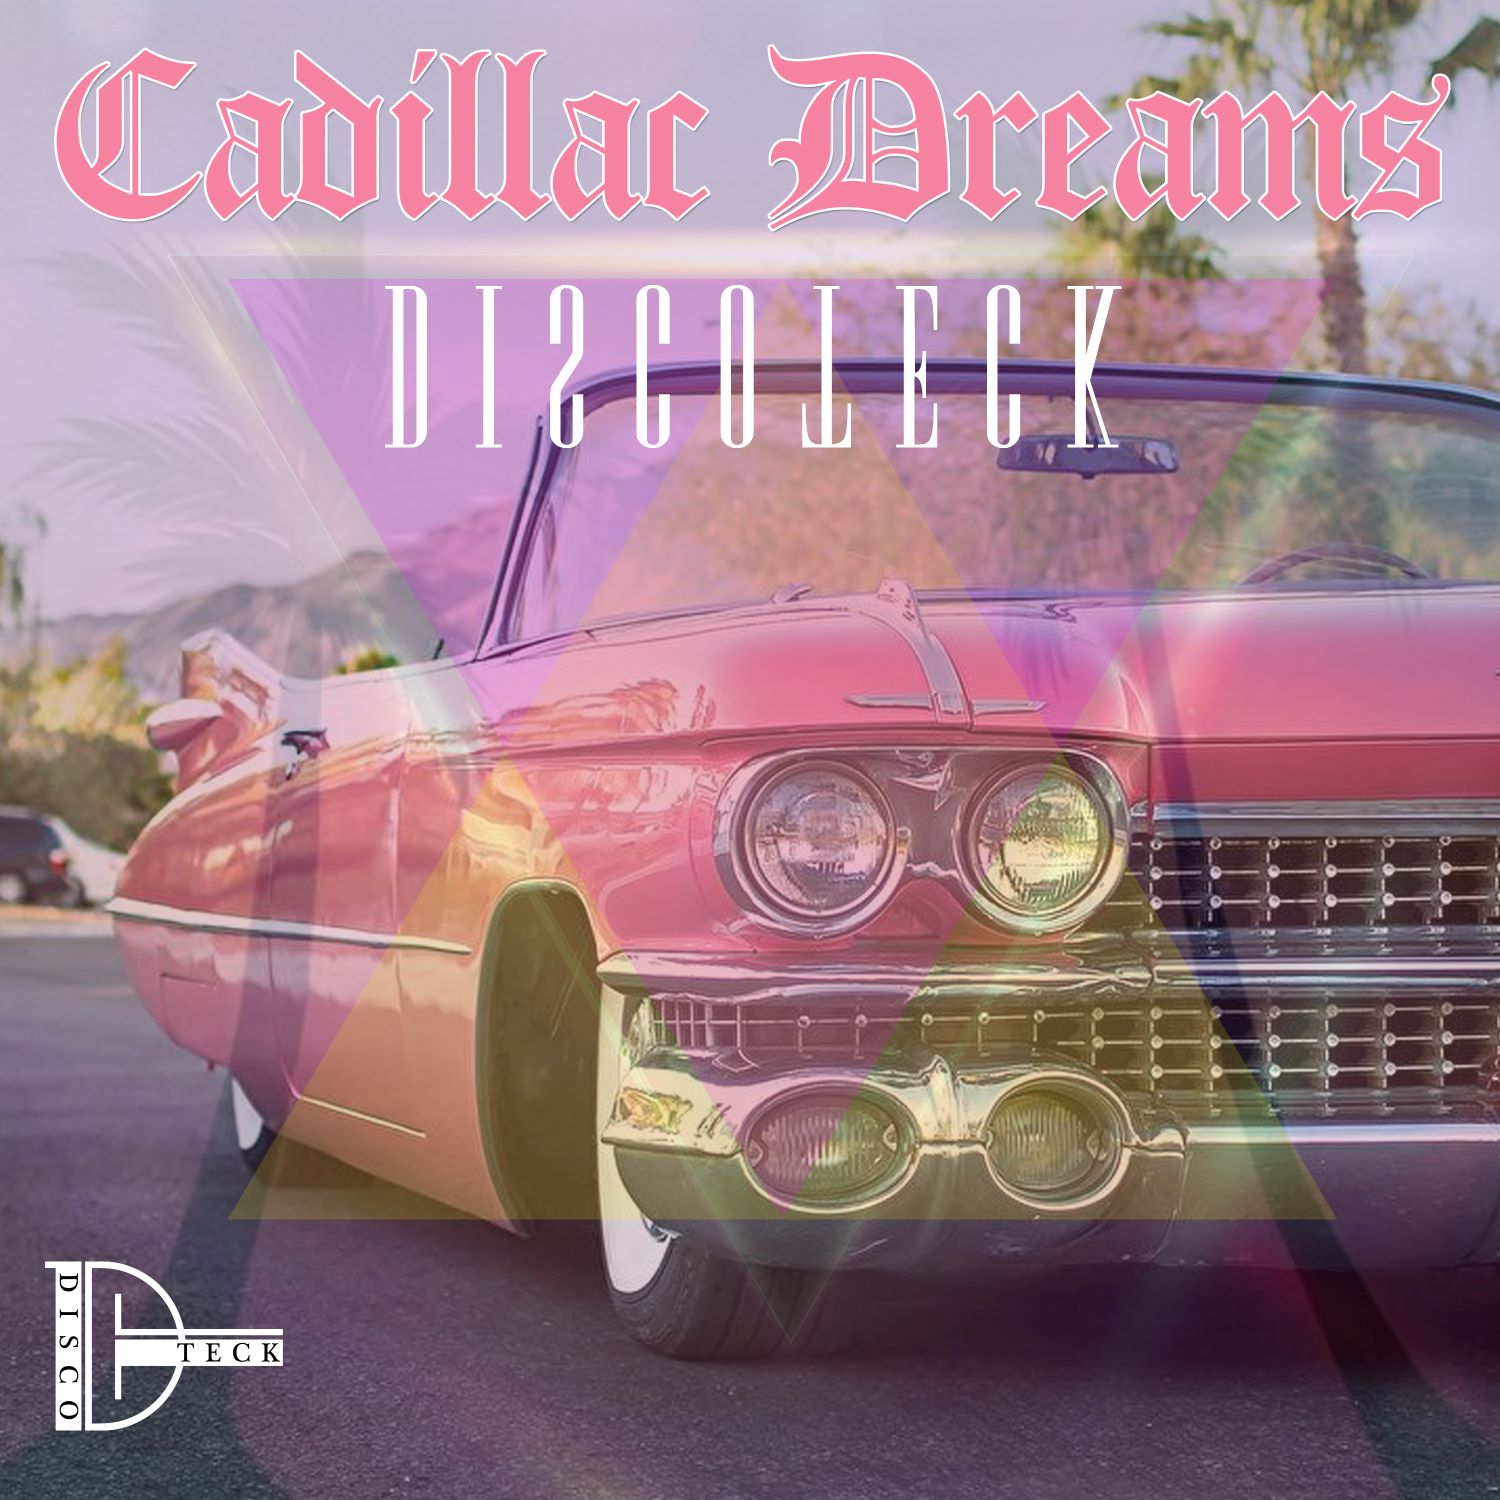 Jackie's Boy - "Cadillac Dreams" Album Cover